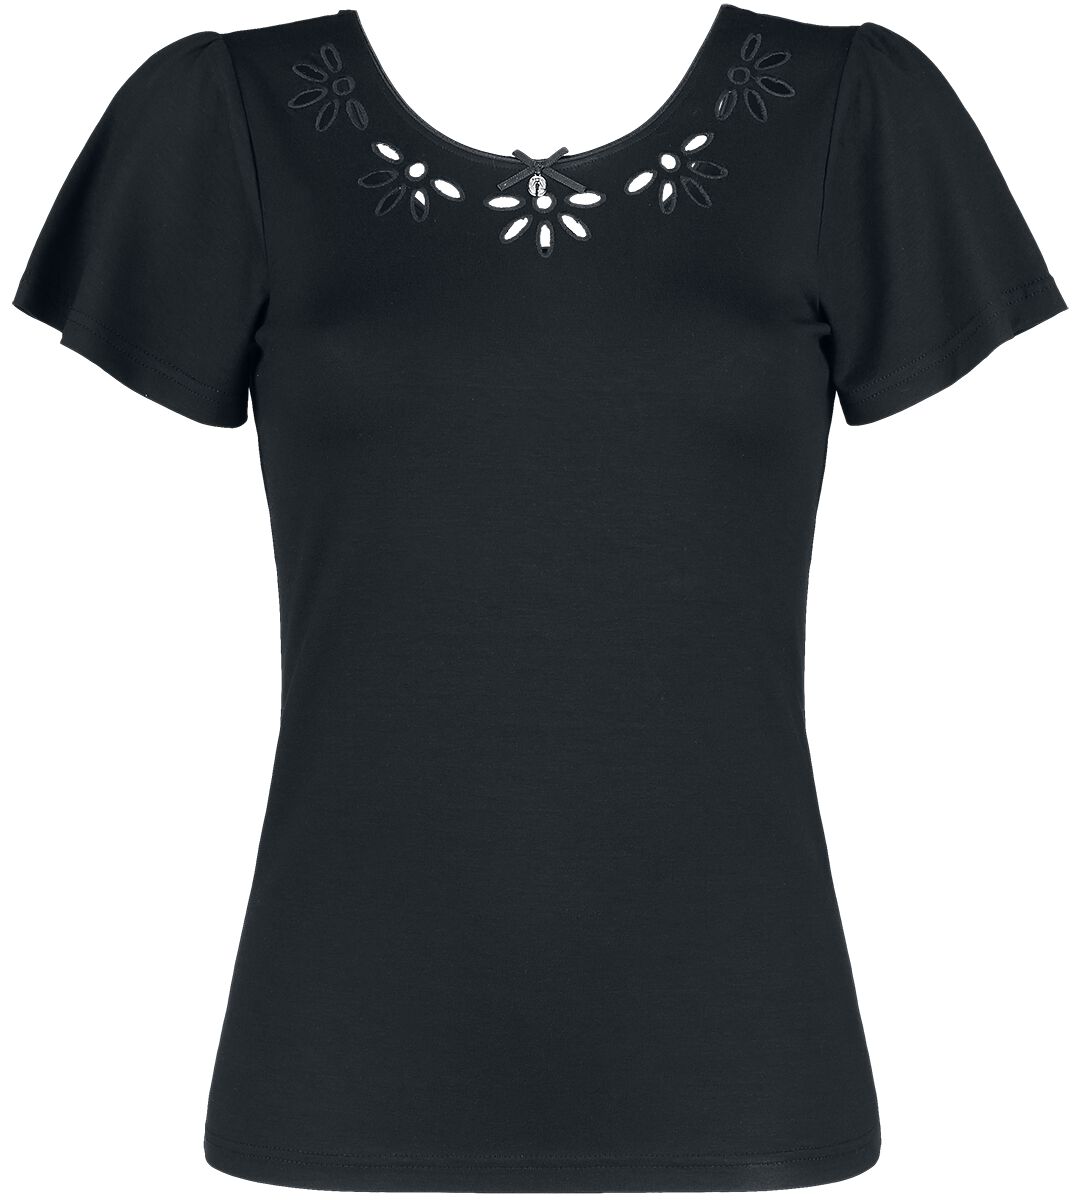 T-Shirt Manches courtes Rockabilly de Vive Maria - T-Shirt Midsummer Flower - XS - pour Femme - noir